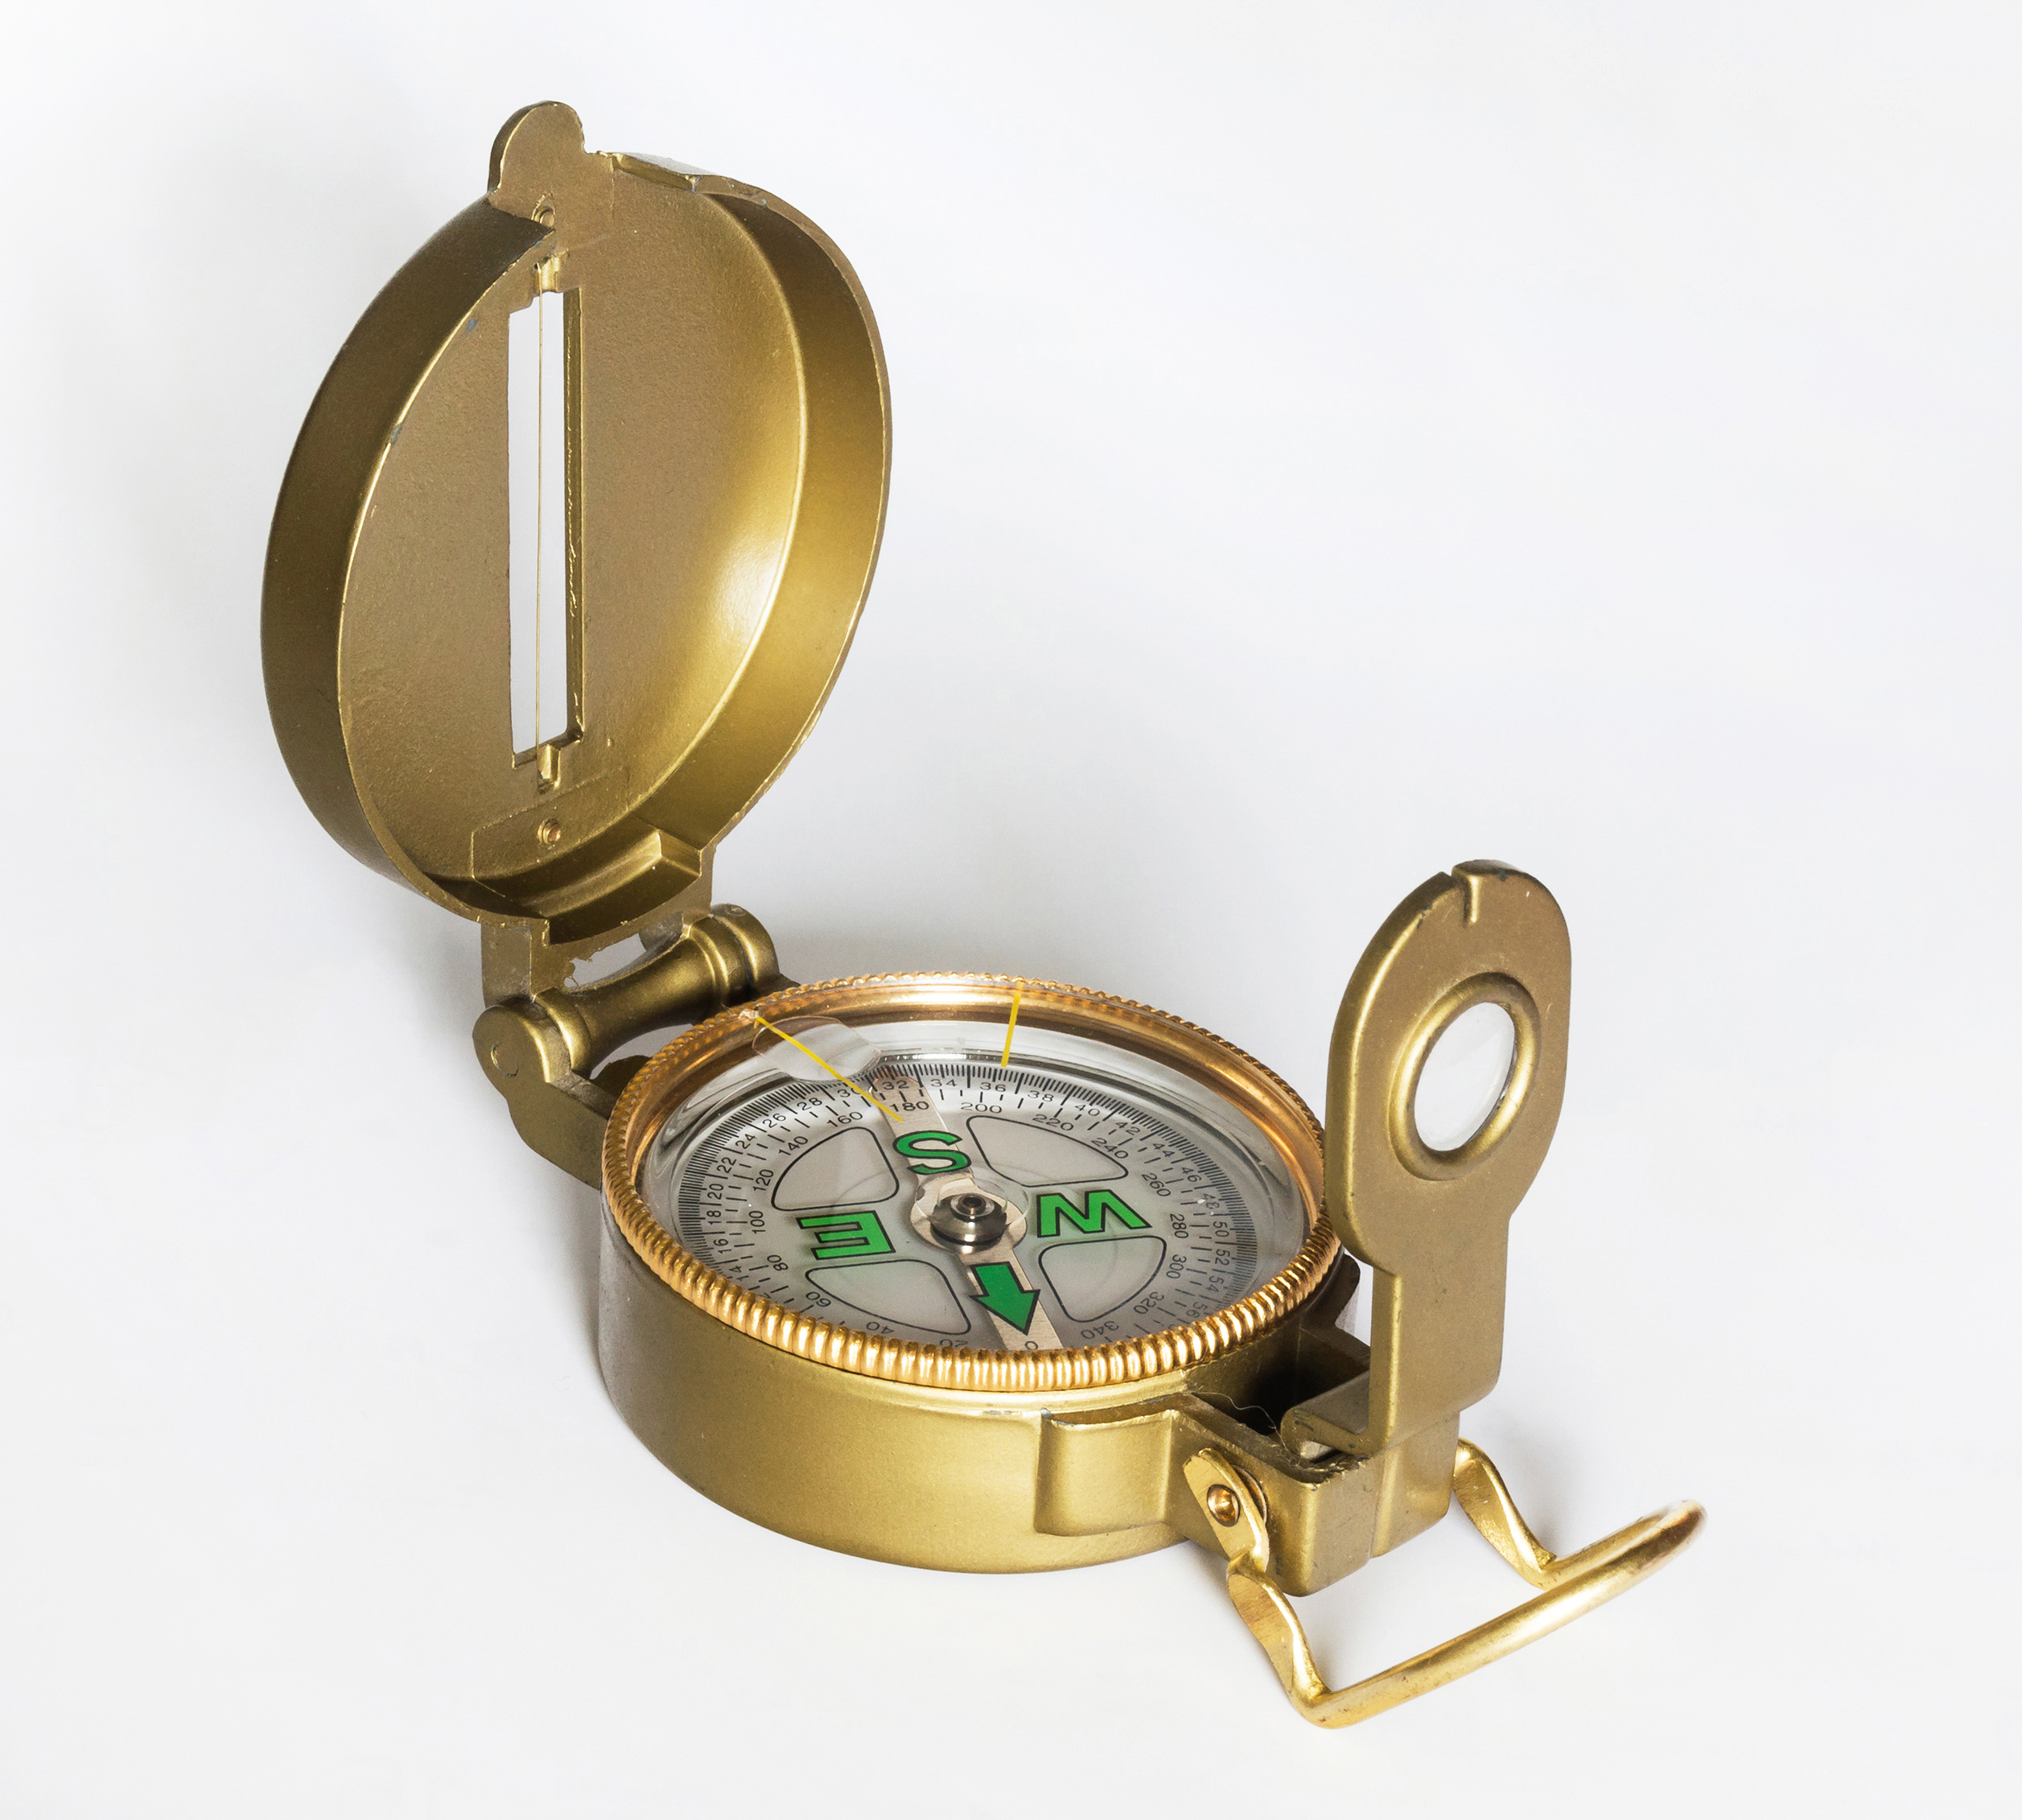 Antique Compass Brass Pocket Compass Delvy compass-Push Button direction compas 